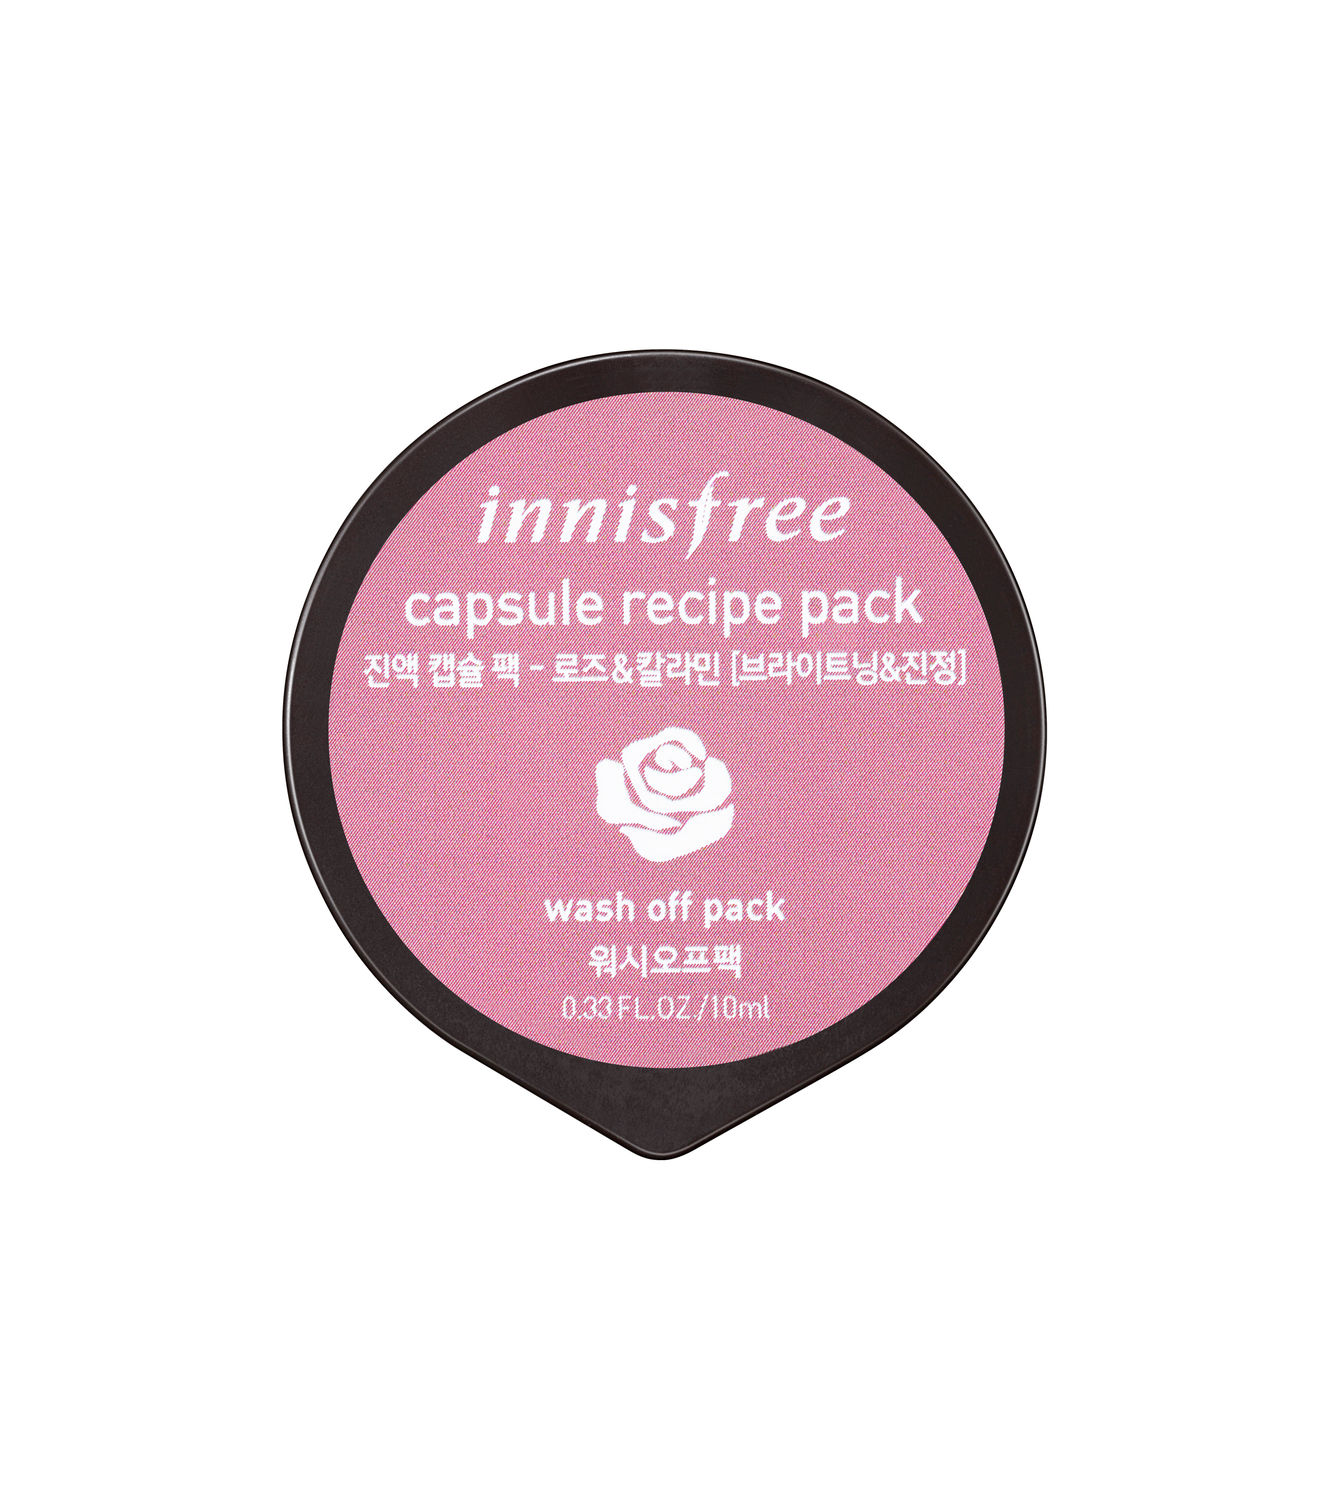 Buy Innisfree Capsule Recipe Pack [Rose & Calamine] (10 ml) - Purplle